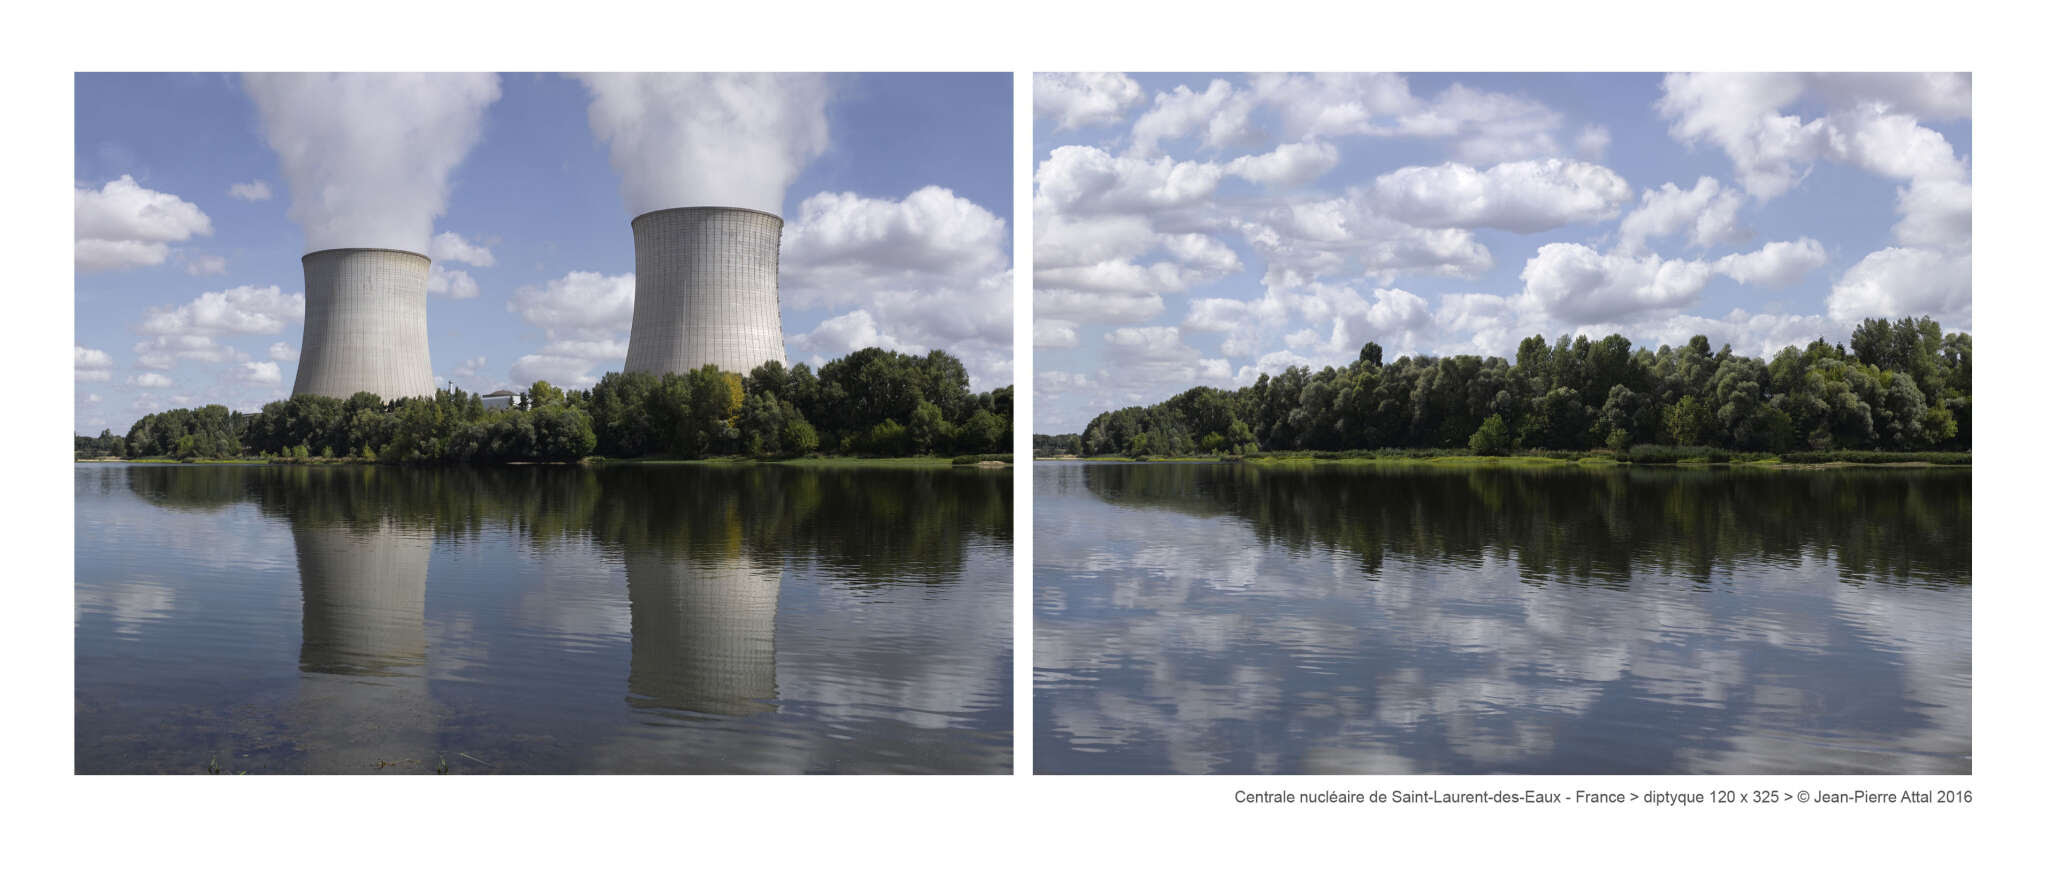 Centrale nucléaire de Saint-Laurent-des Eaux: à gauche une photo « normale », un enregistrement d’un paysage avec la centrale. A droite : une photo « fictionnelle », retravaillée numériquement, pour illustrer l’idée : « à quoi ressemblerait ce même paysage sans la centrale ».